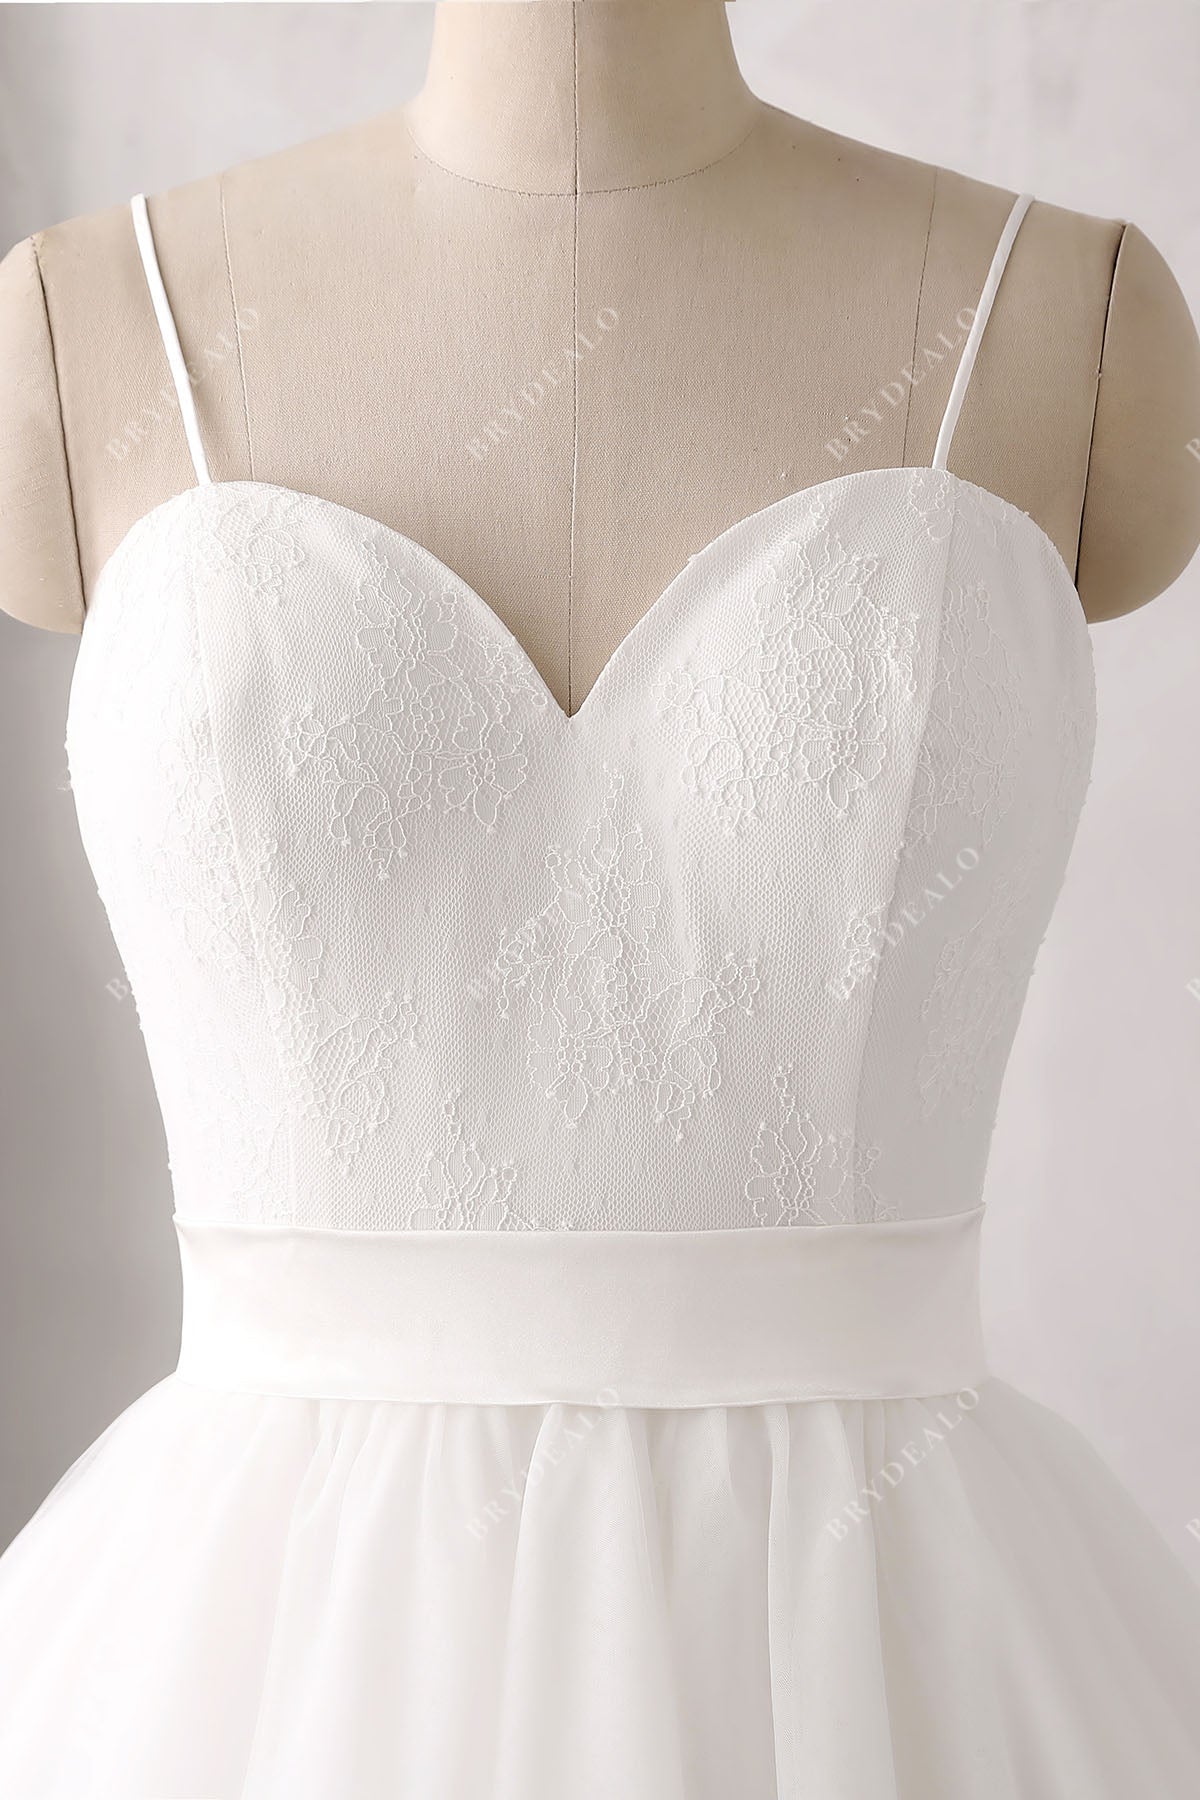 sleeveless spaghetti straps sweetheart corset vintage wedding gown